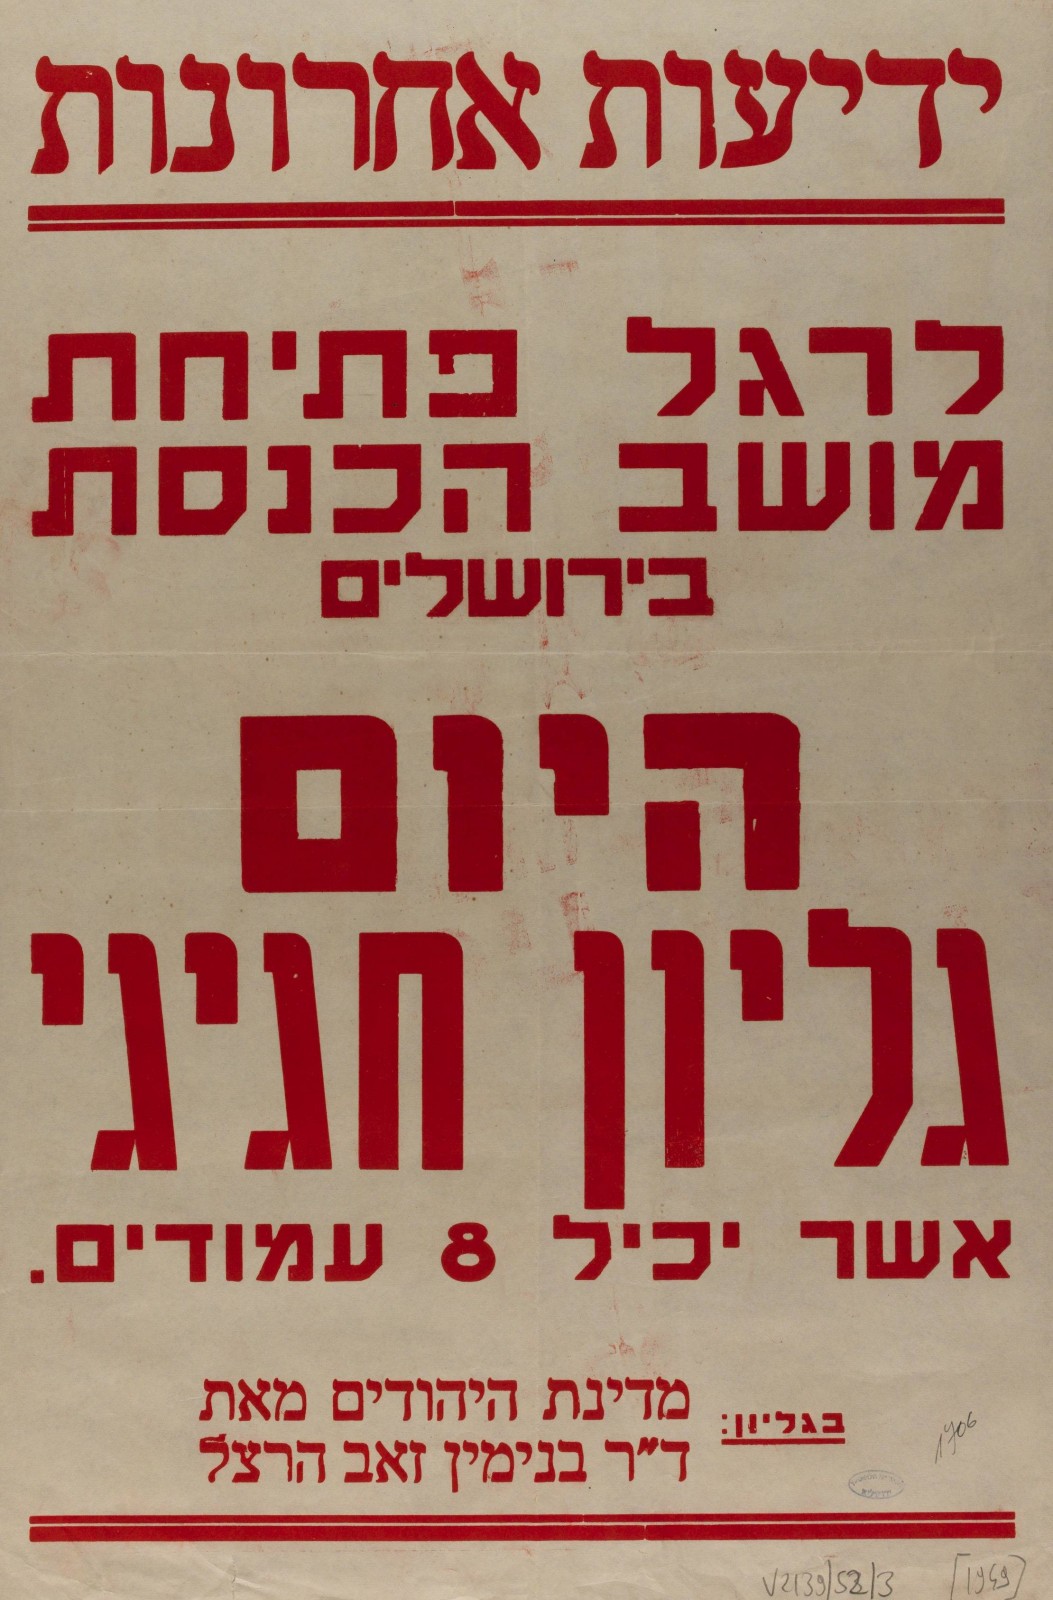 כרזת "ידיעות אחרונות" לרגל פתיחת מושב הכנסת הראשונה, 1949